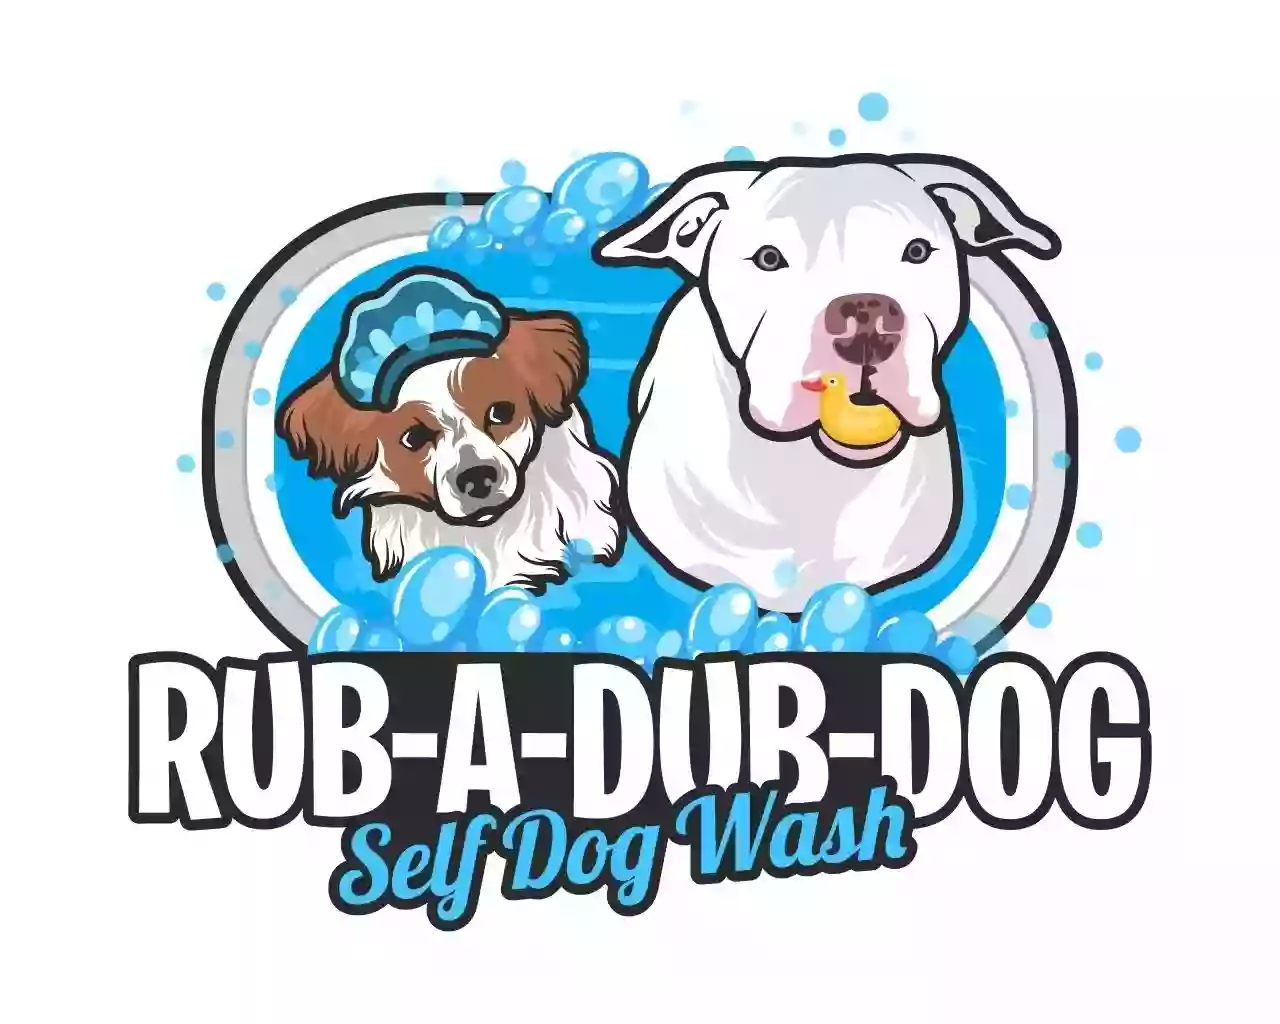 Rub-A-Dub-Dog Self Dog Wash